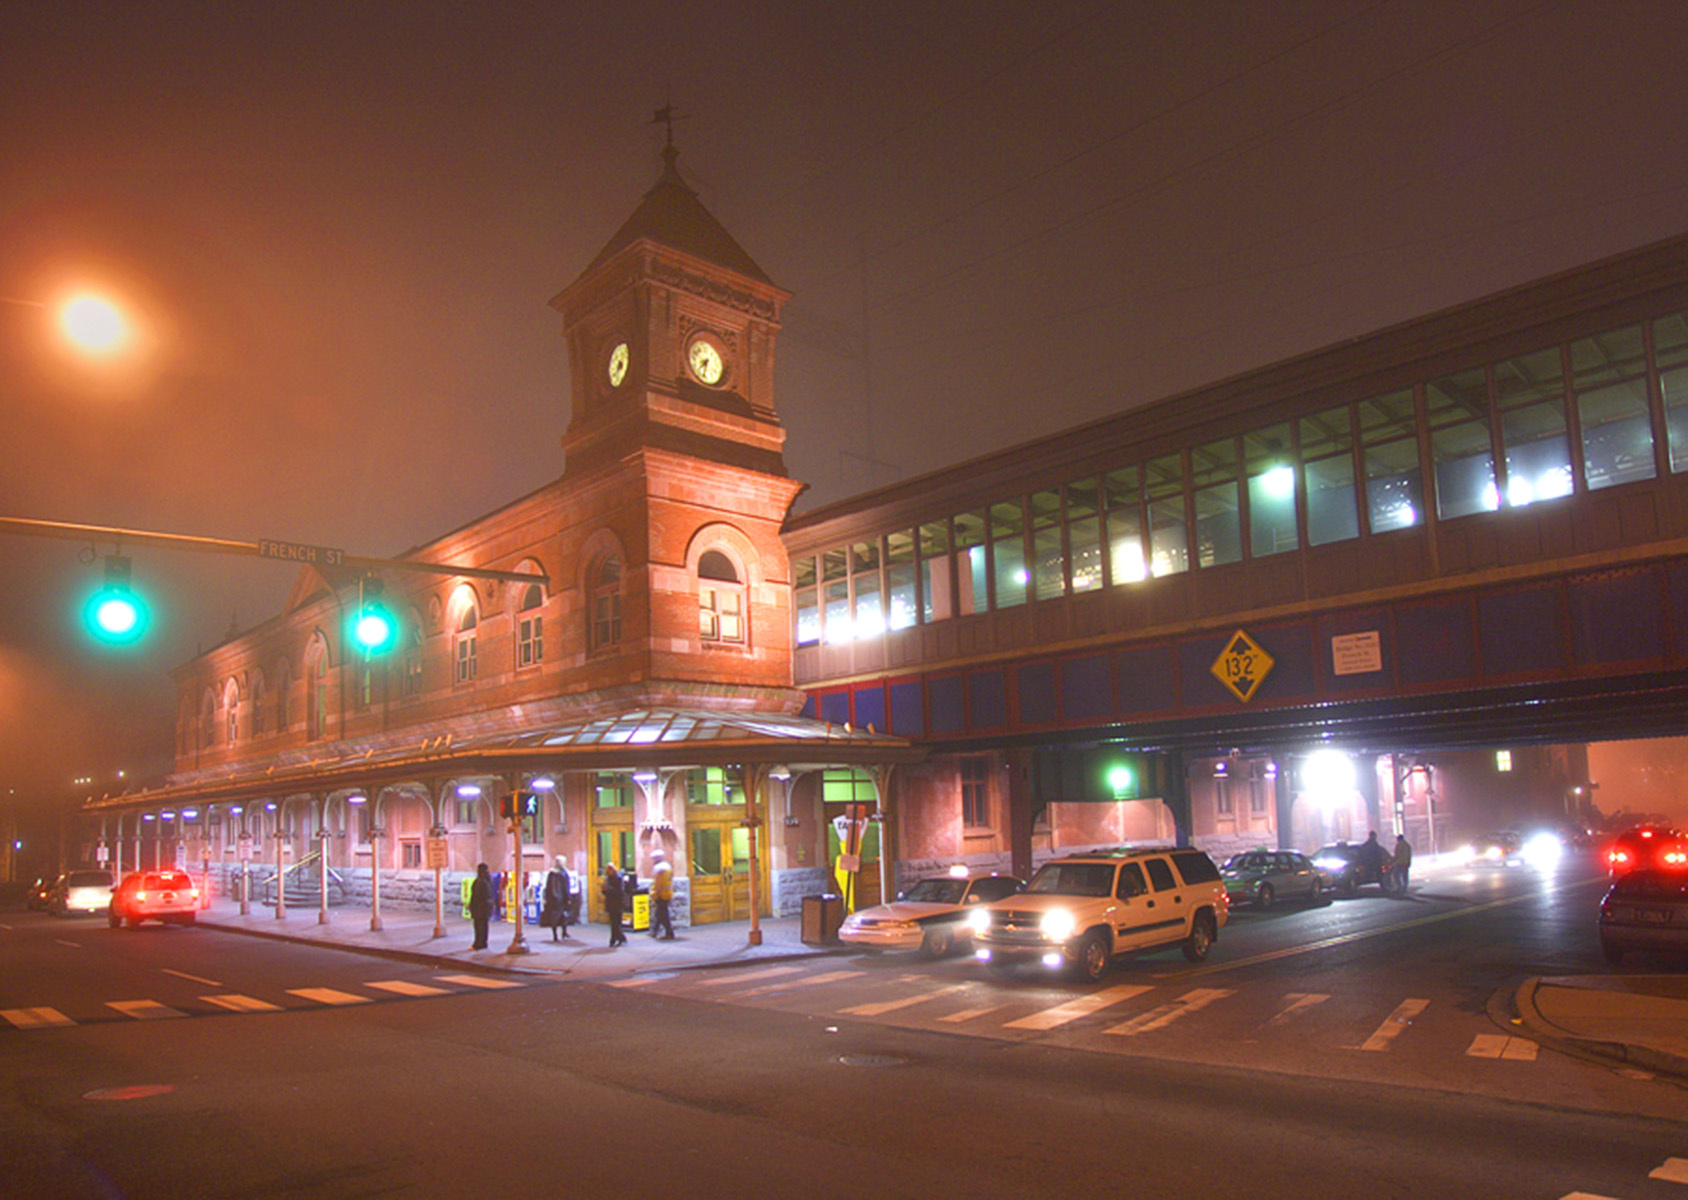 Furness Train Station